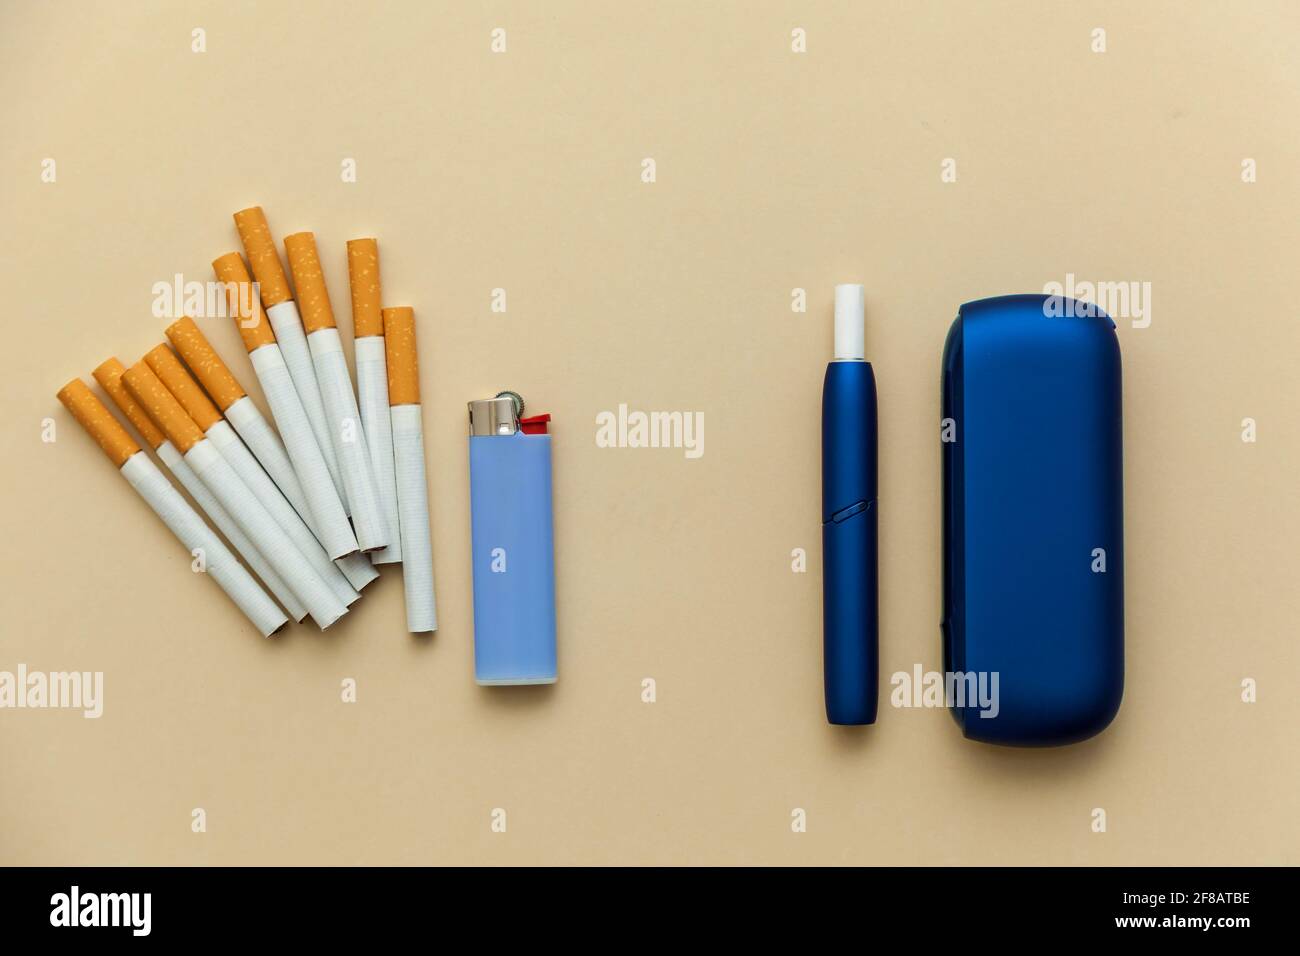 Elektronische blaue IQOS-Zigarette, gewöhnliche Zigaretten mit